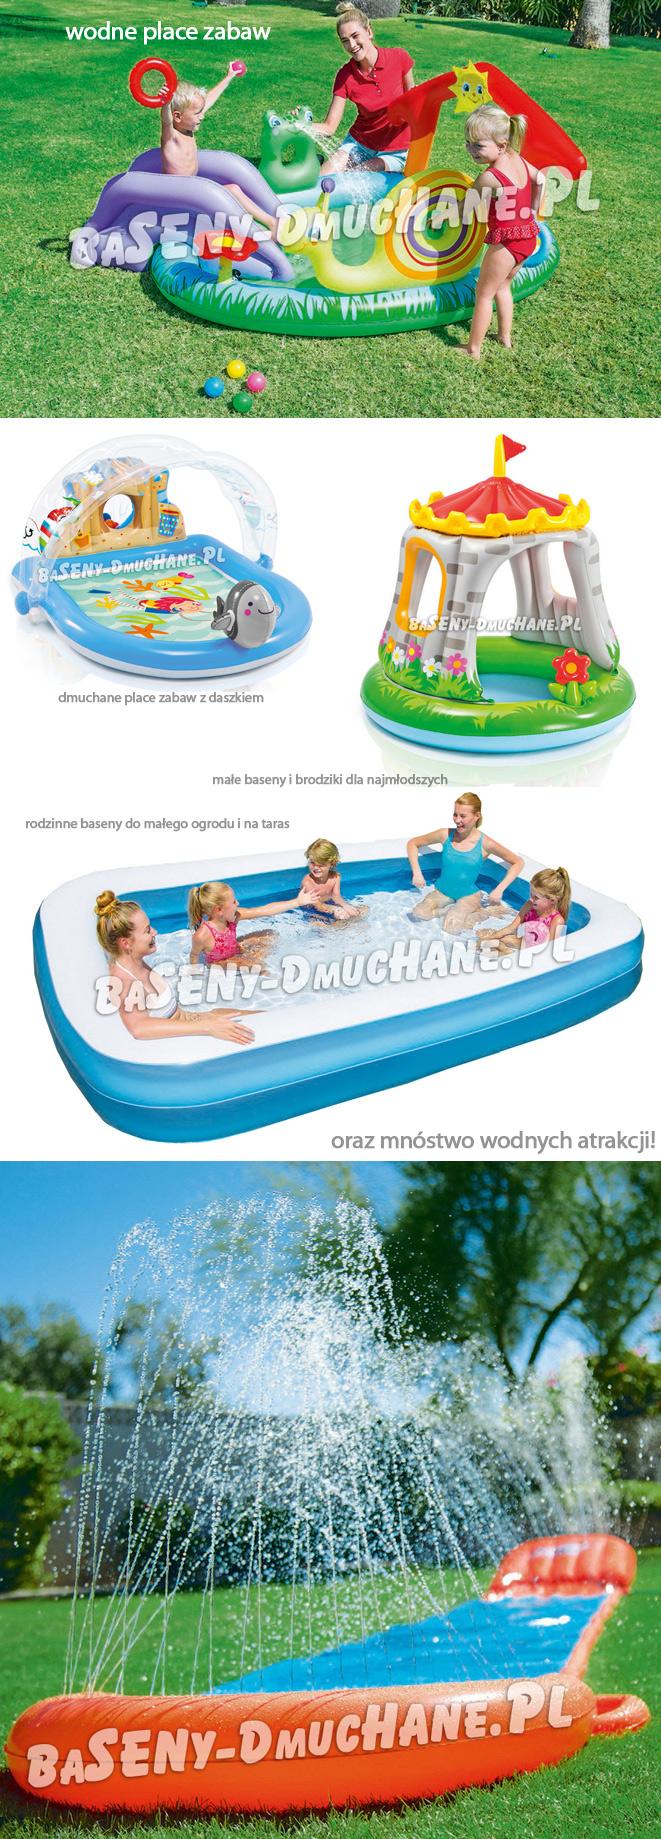 wodne place zabaw, baseny dmuchane, brodziki dla małych dzieci, baseniki i fontanny